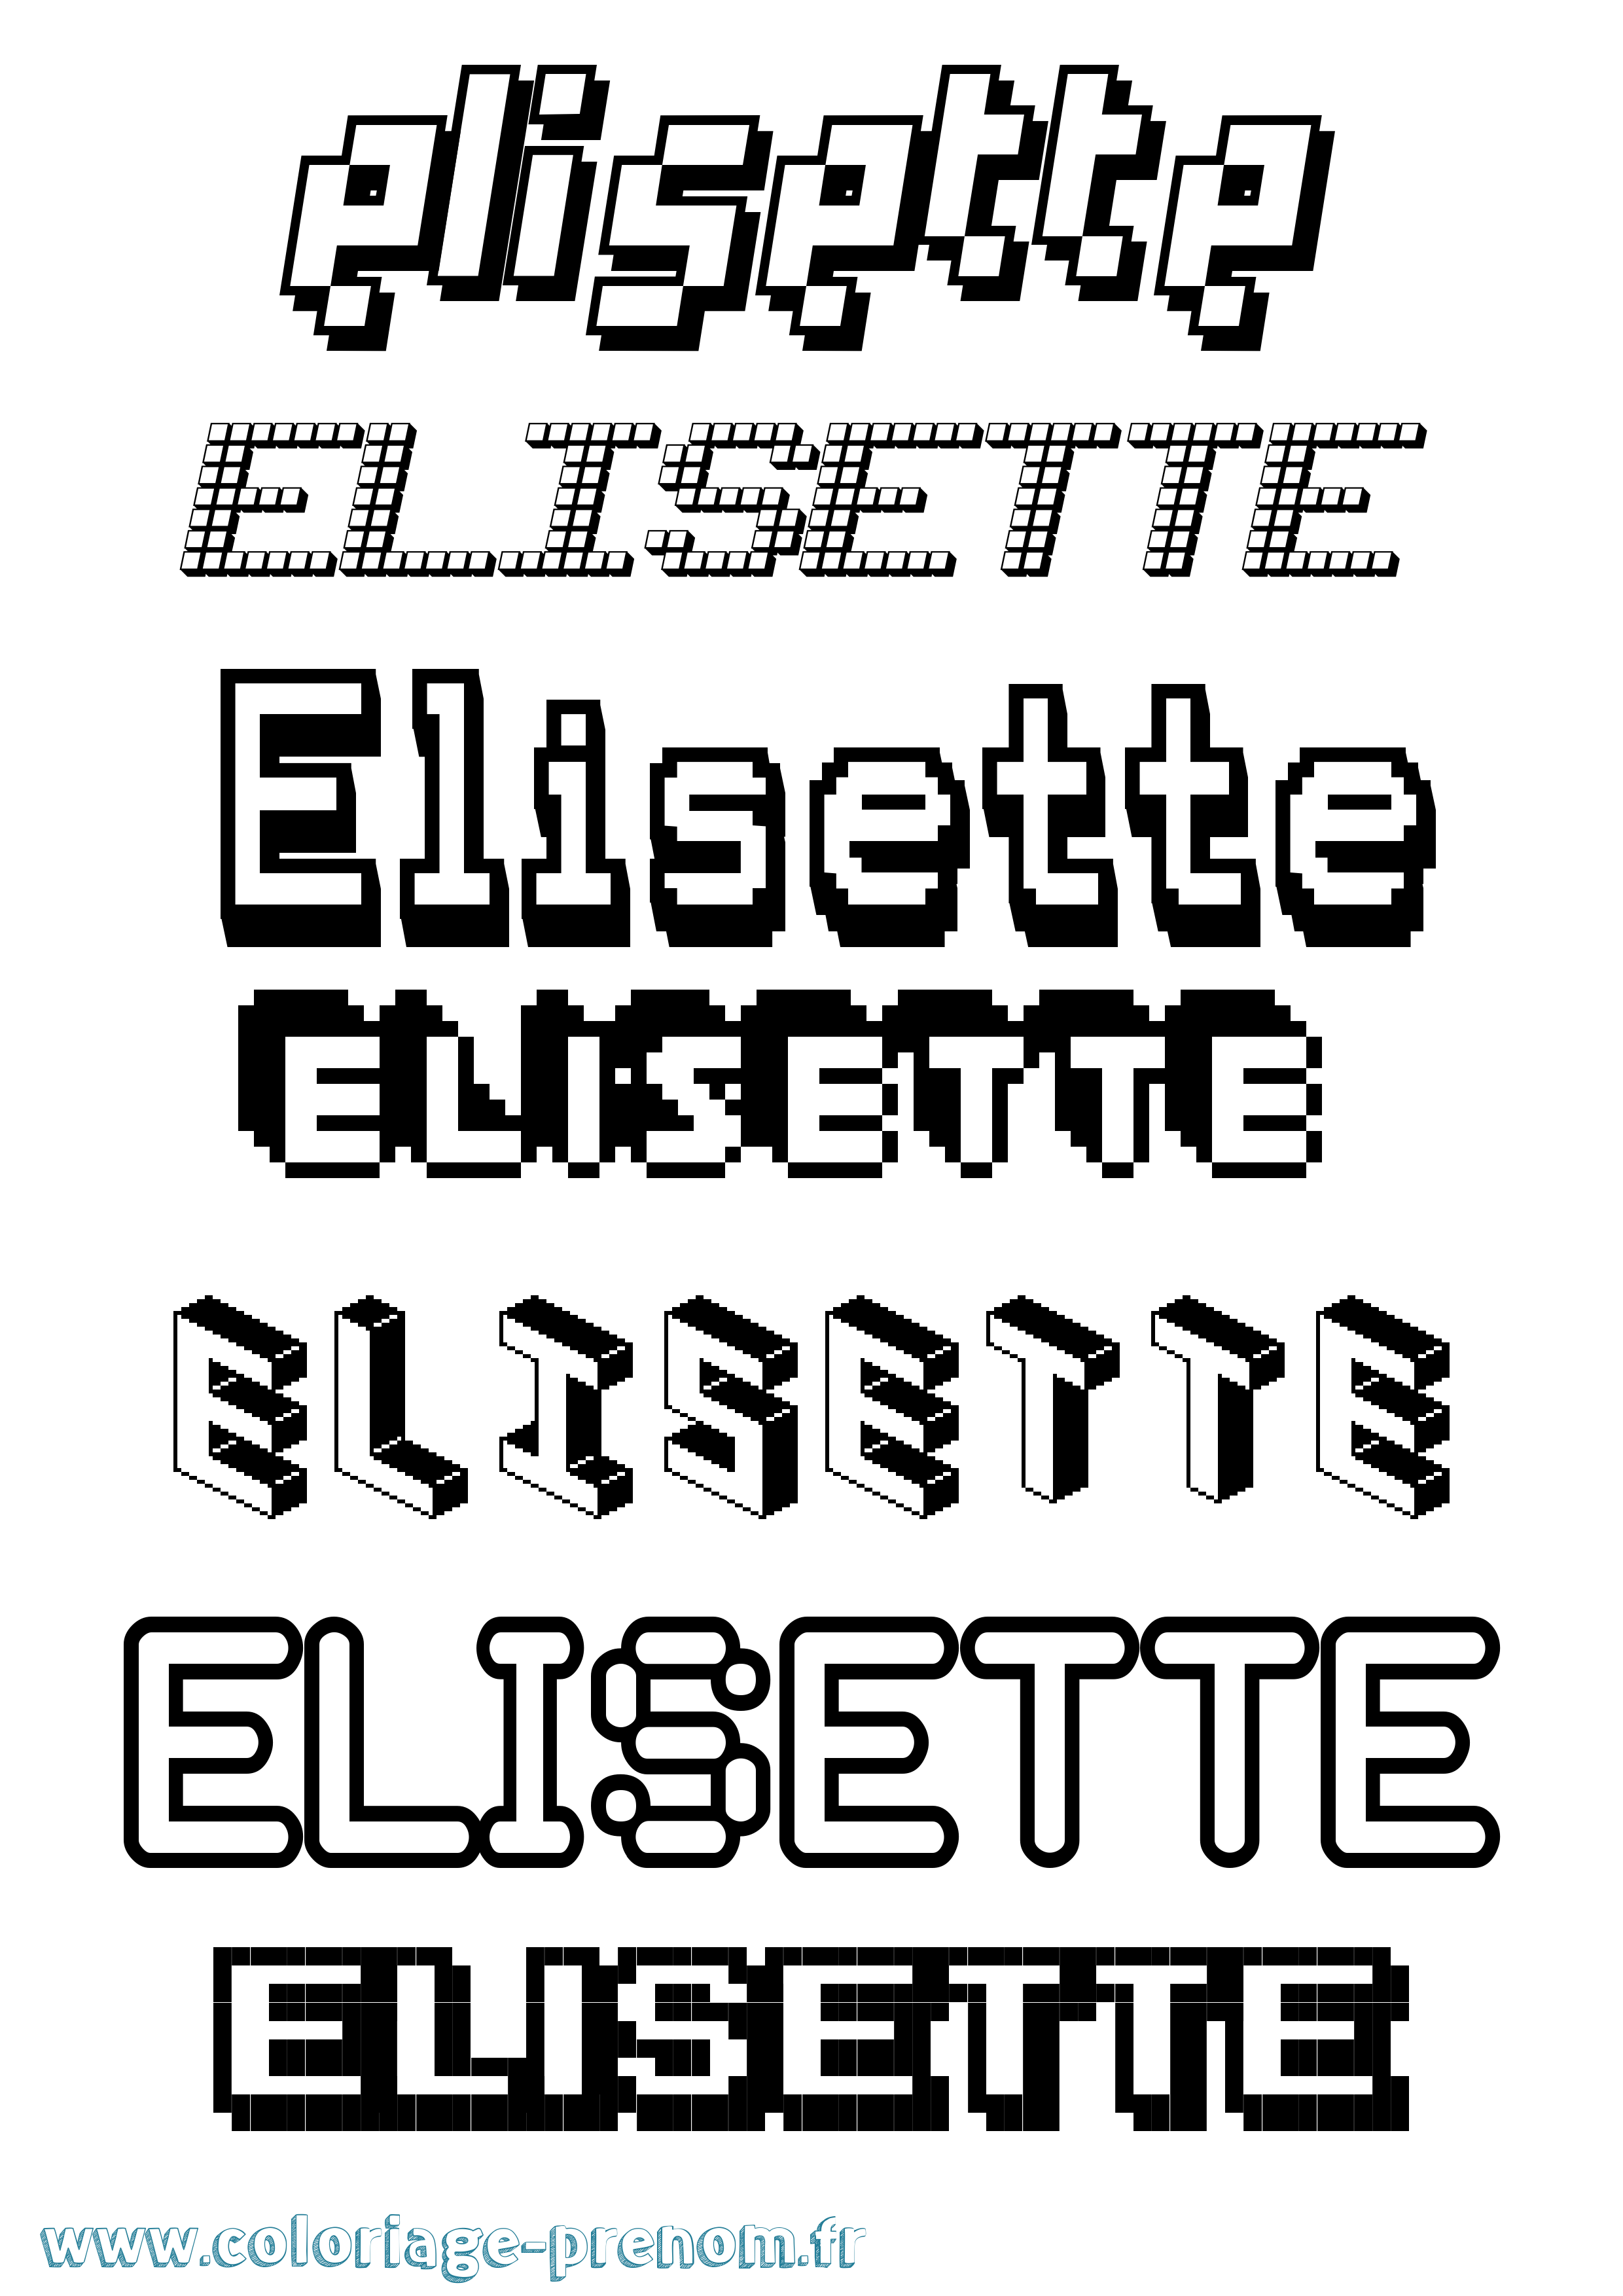 Coloriage prénom Elisette Pixel